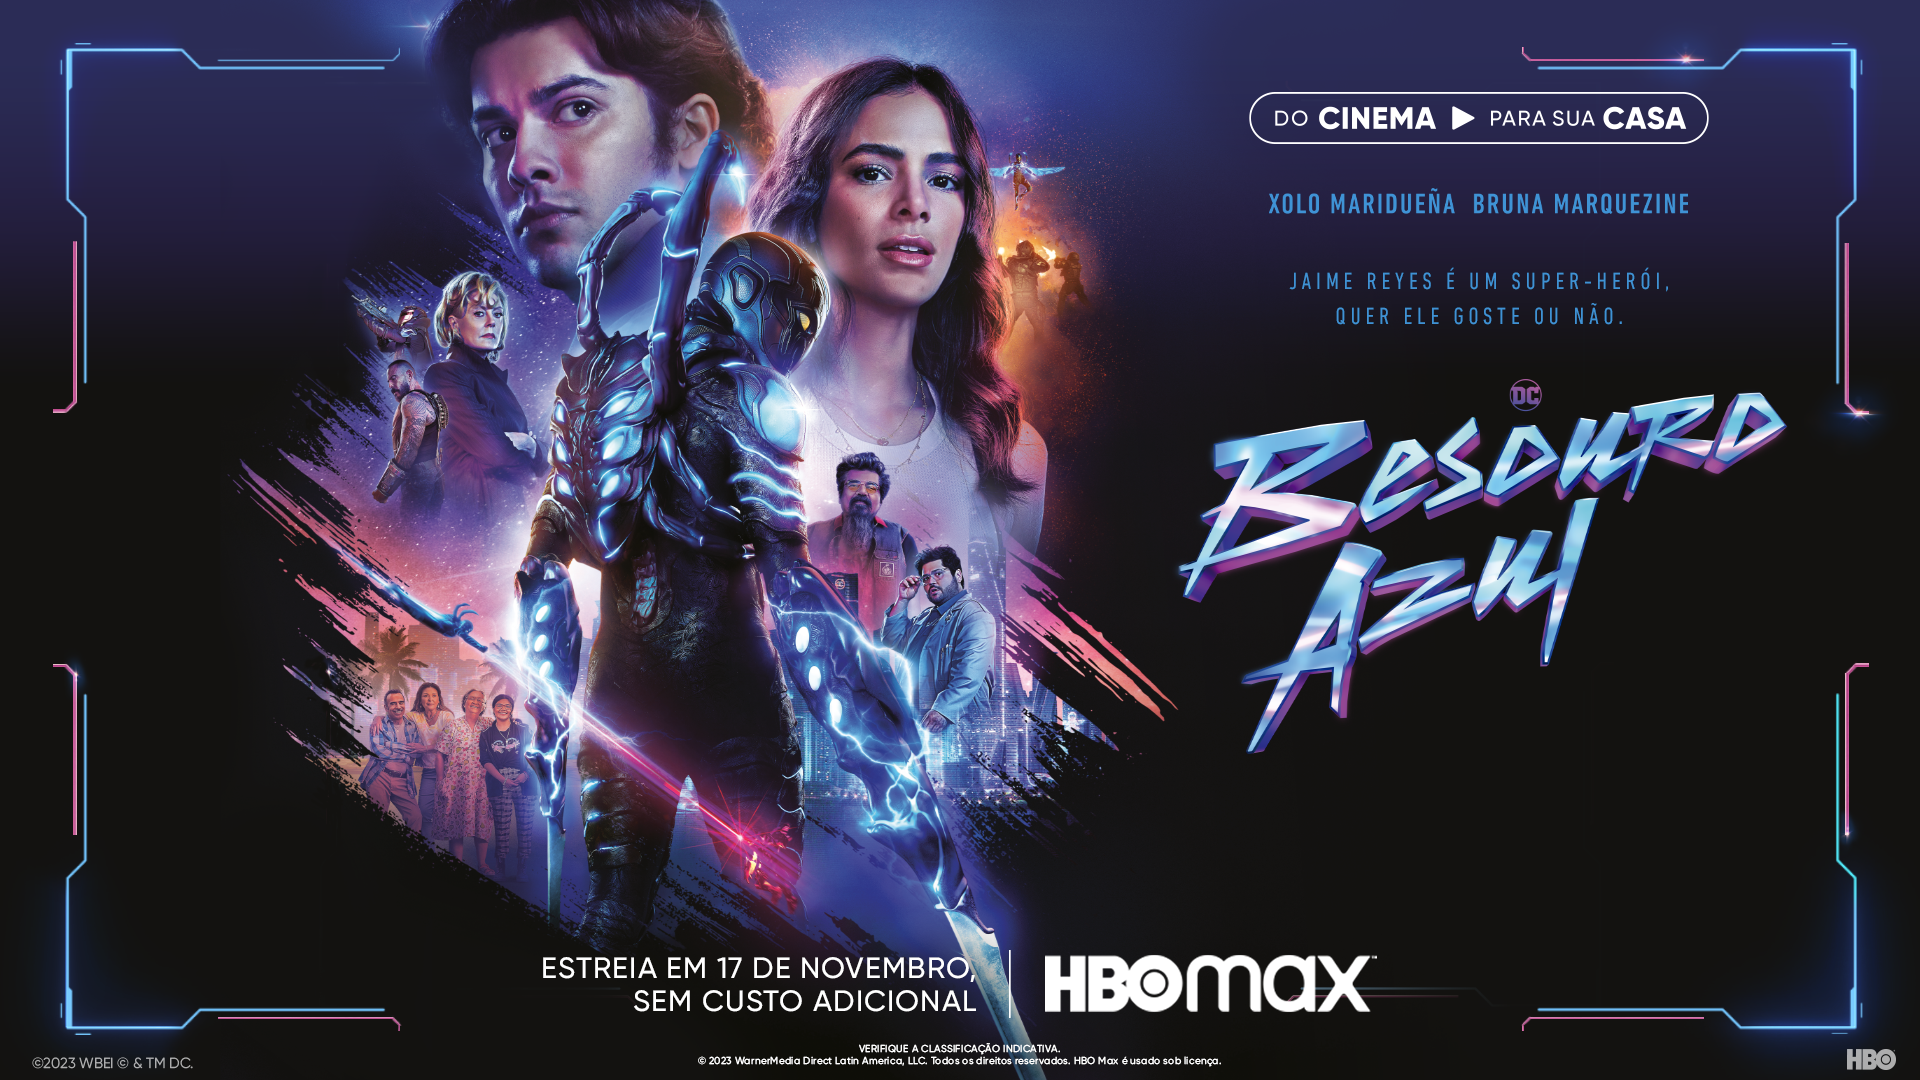 Besouro Azul já está disponível para assistir na HBO Max